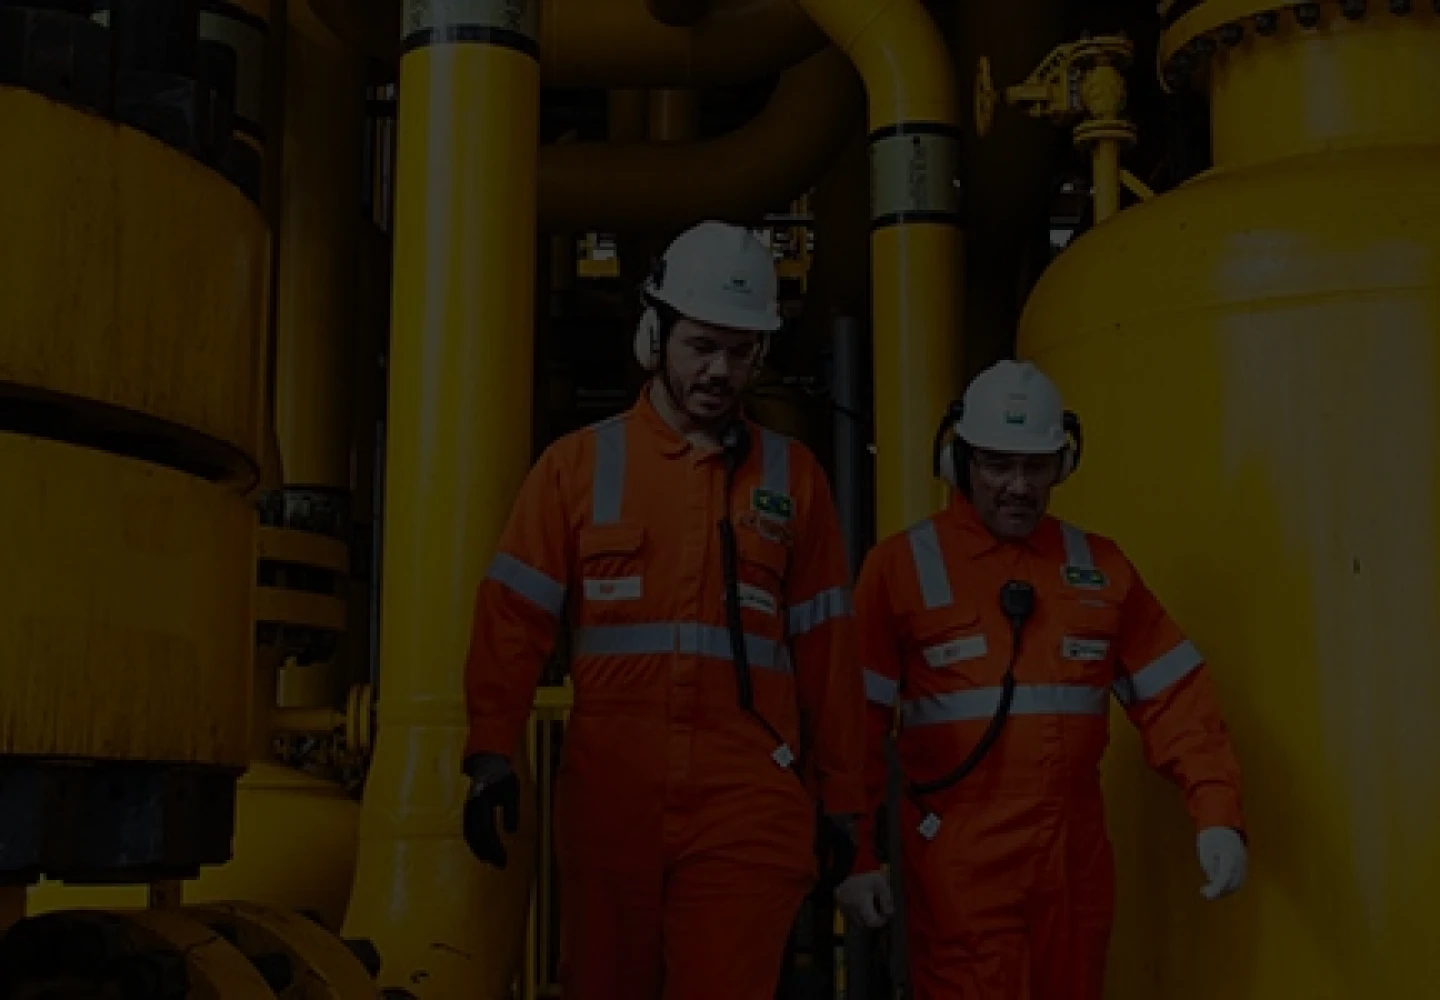 Colaboradores Petrobras vestindo EPIs de segurança enquanto trabalham em refinaria.